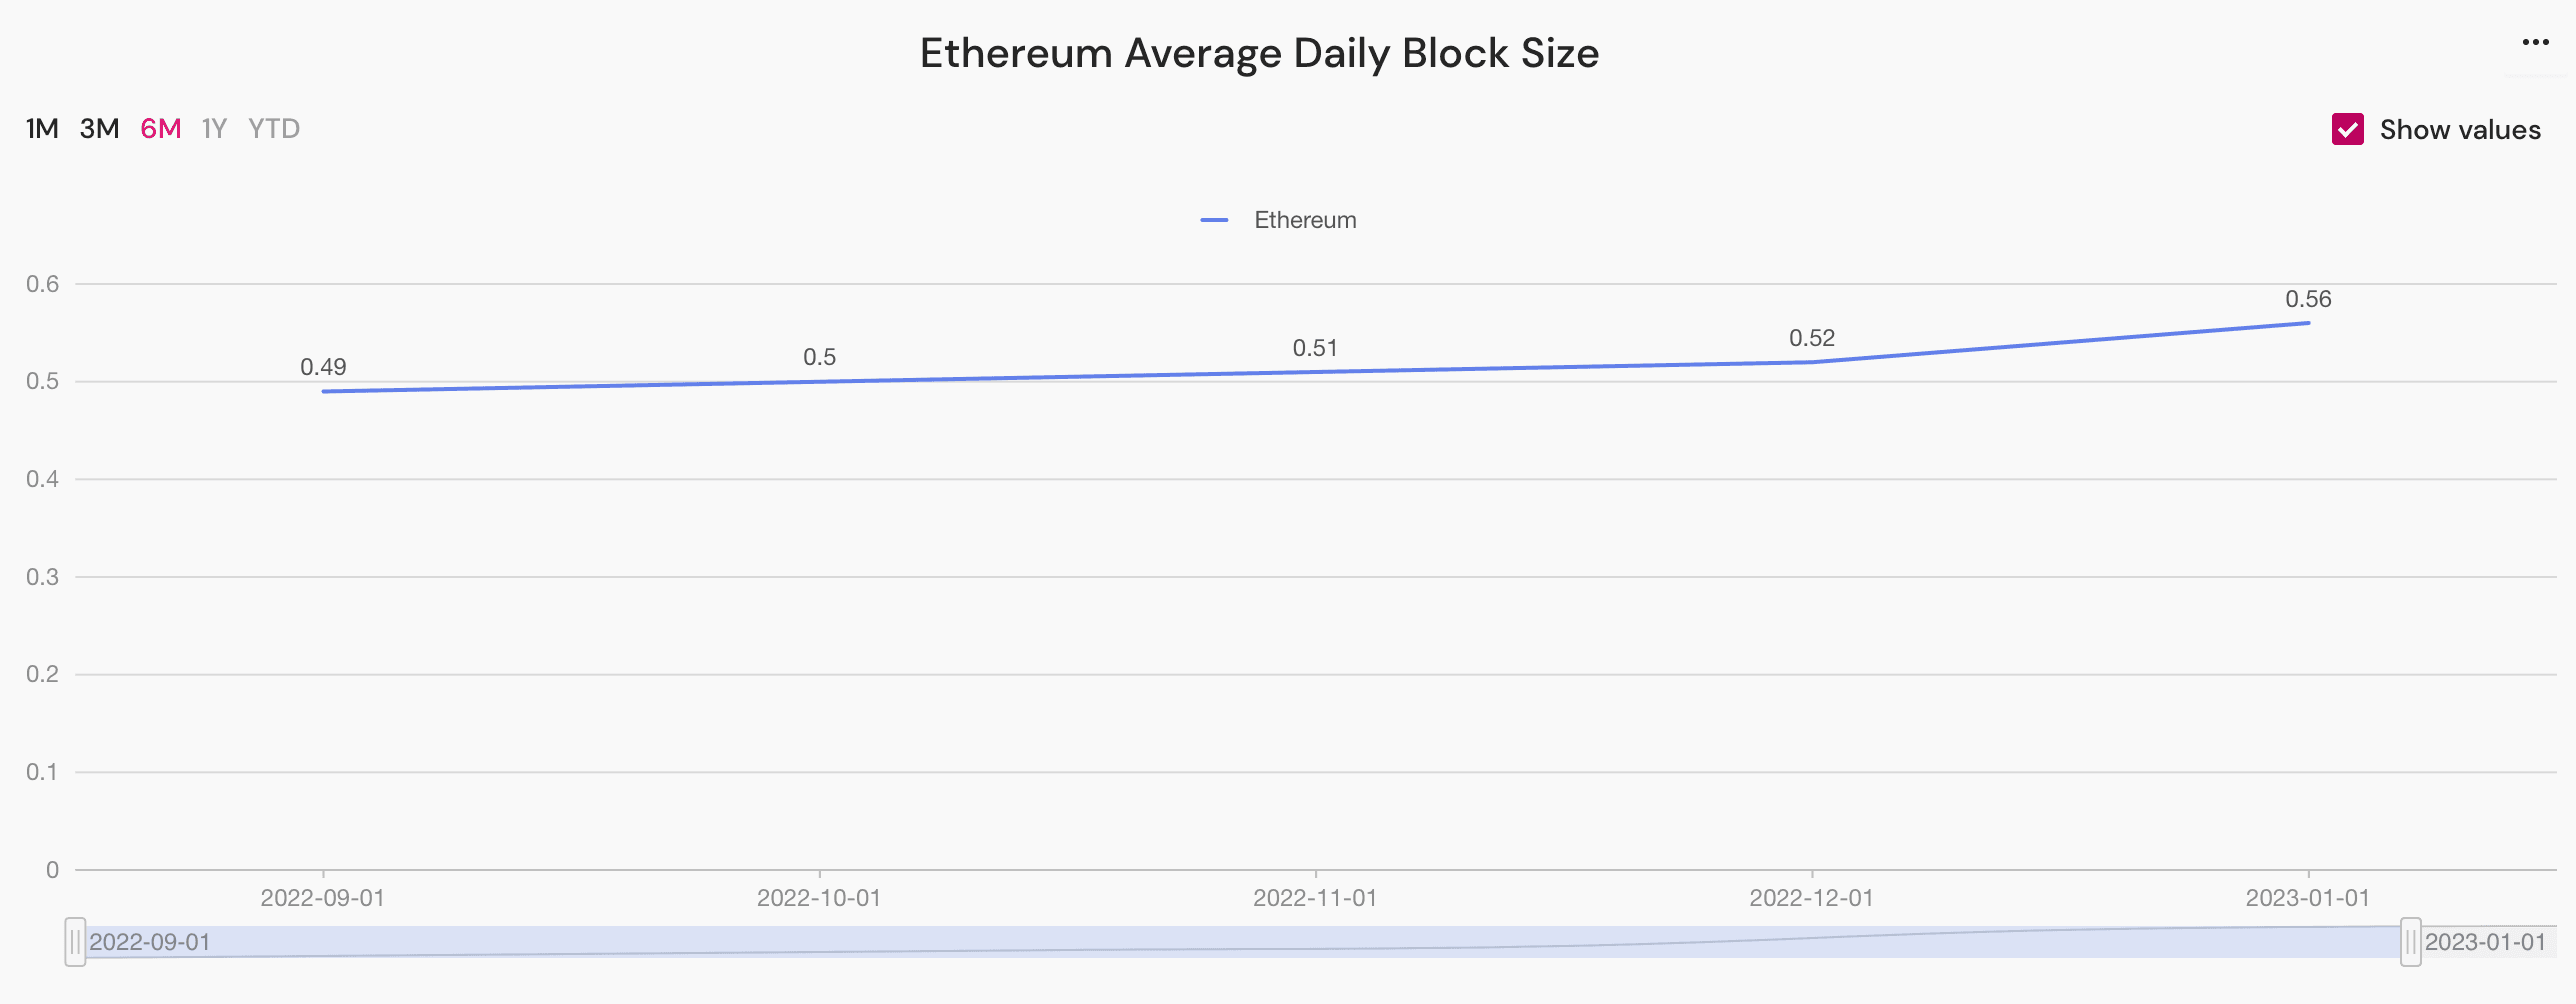 ethereum average daily block size